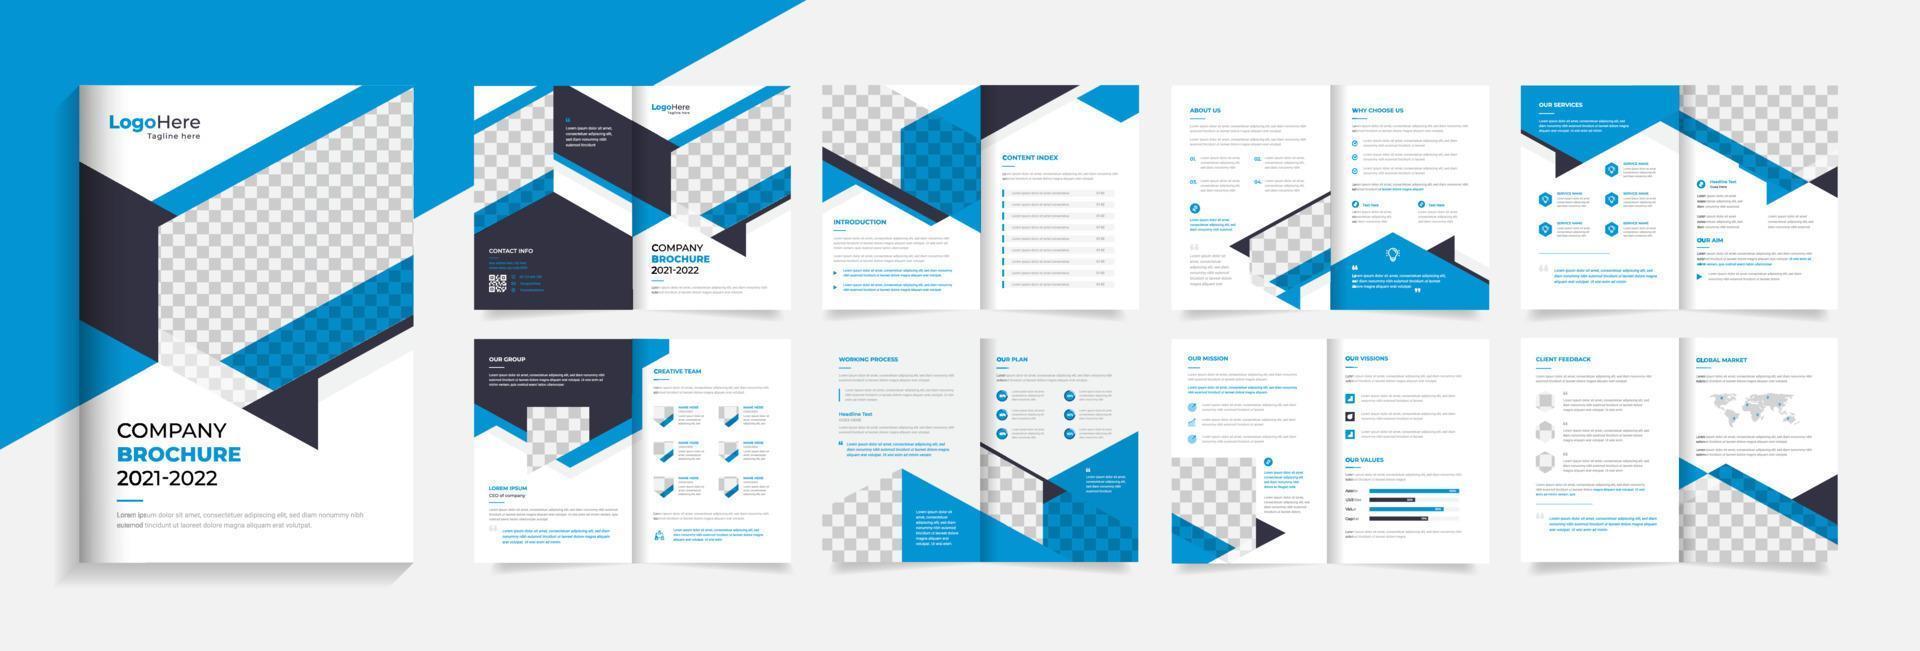 modello di progettazione brochure aziendale blu, vettore di layout profilo aziendale astratto